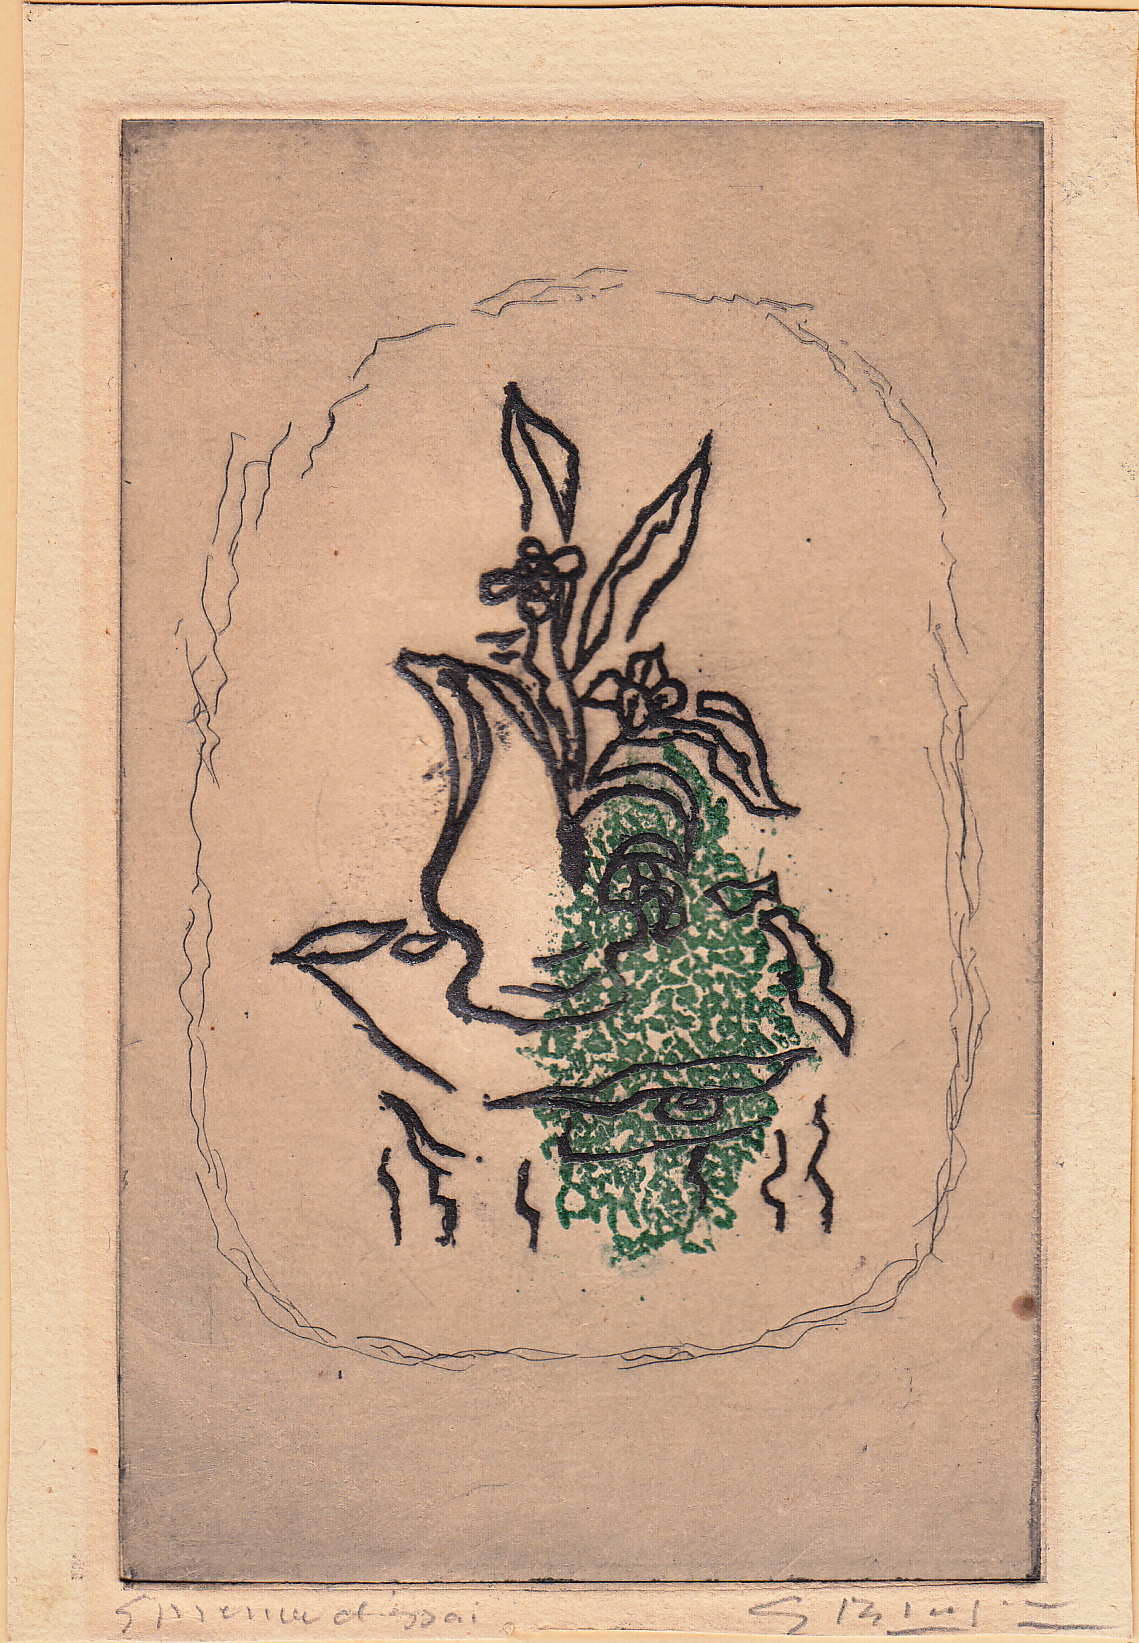 Georges Braque, Bouquet Vert, etching, 1951